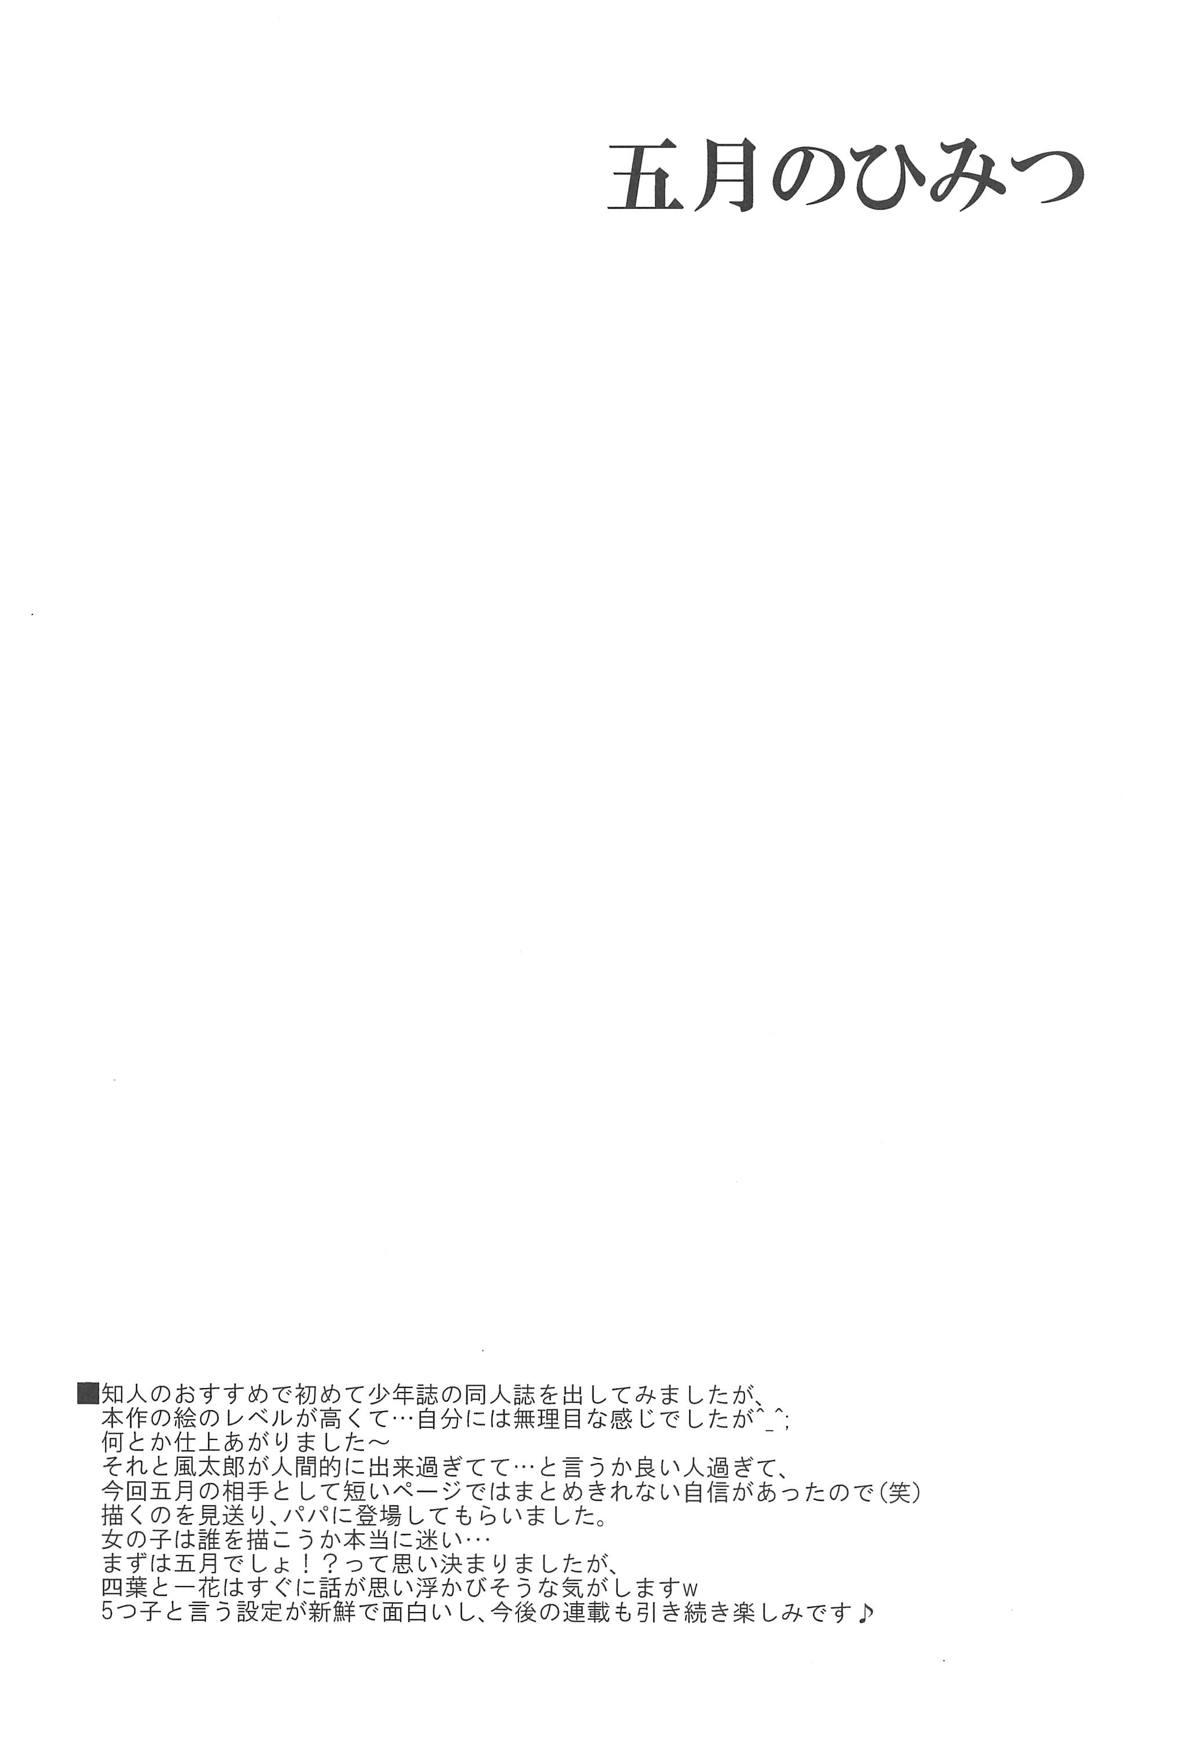 Wet Itsuki no Himitsu - Gotoubun no hanayome Teenage - Page 3